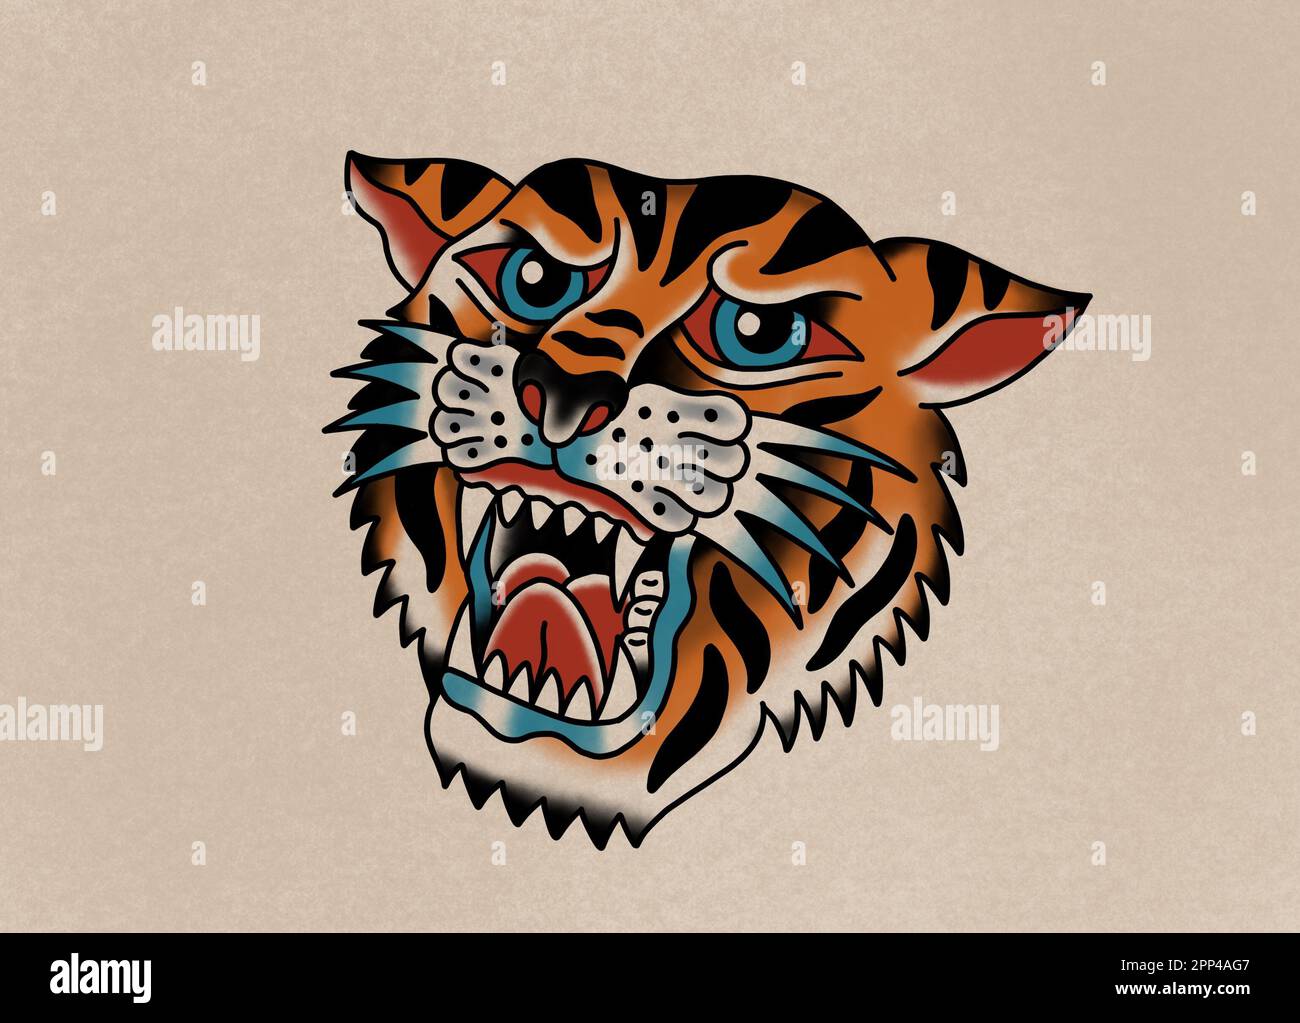 Tatuaggio vecchio stile di arte disegno ruggente testa tigre su vecchio sfondo di carta Foto Stock